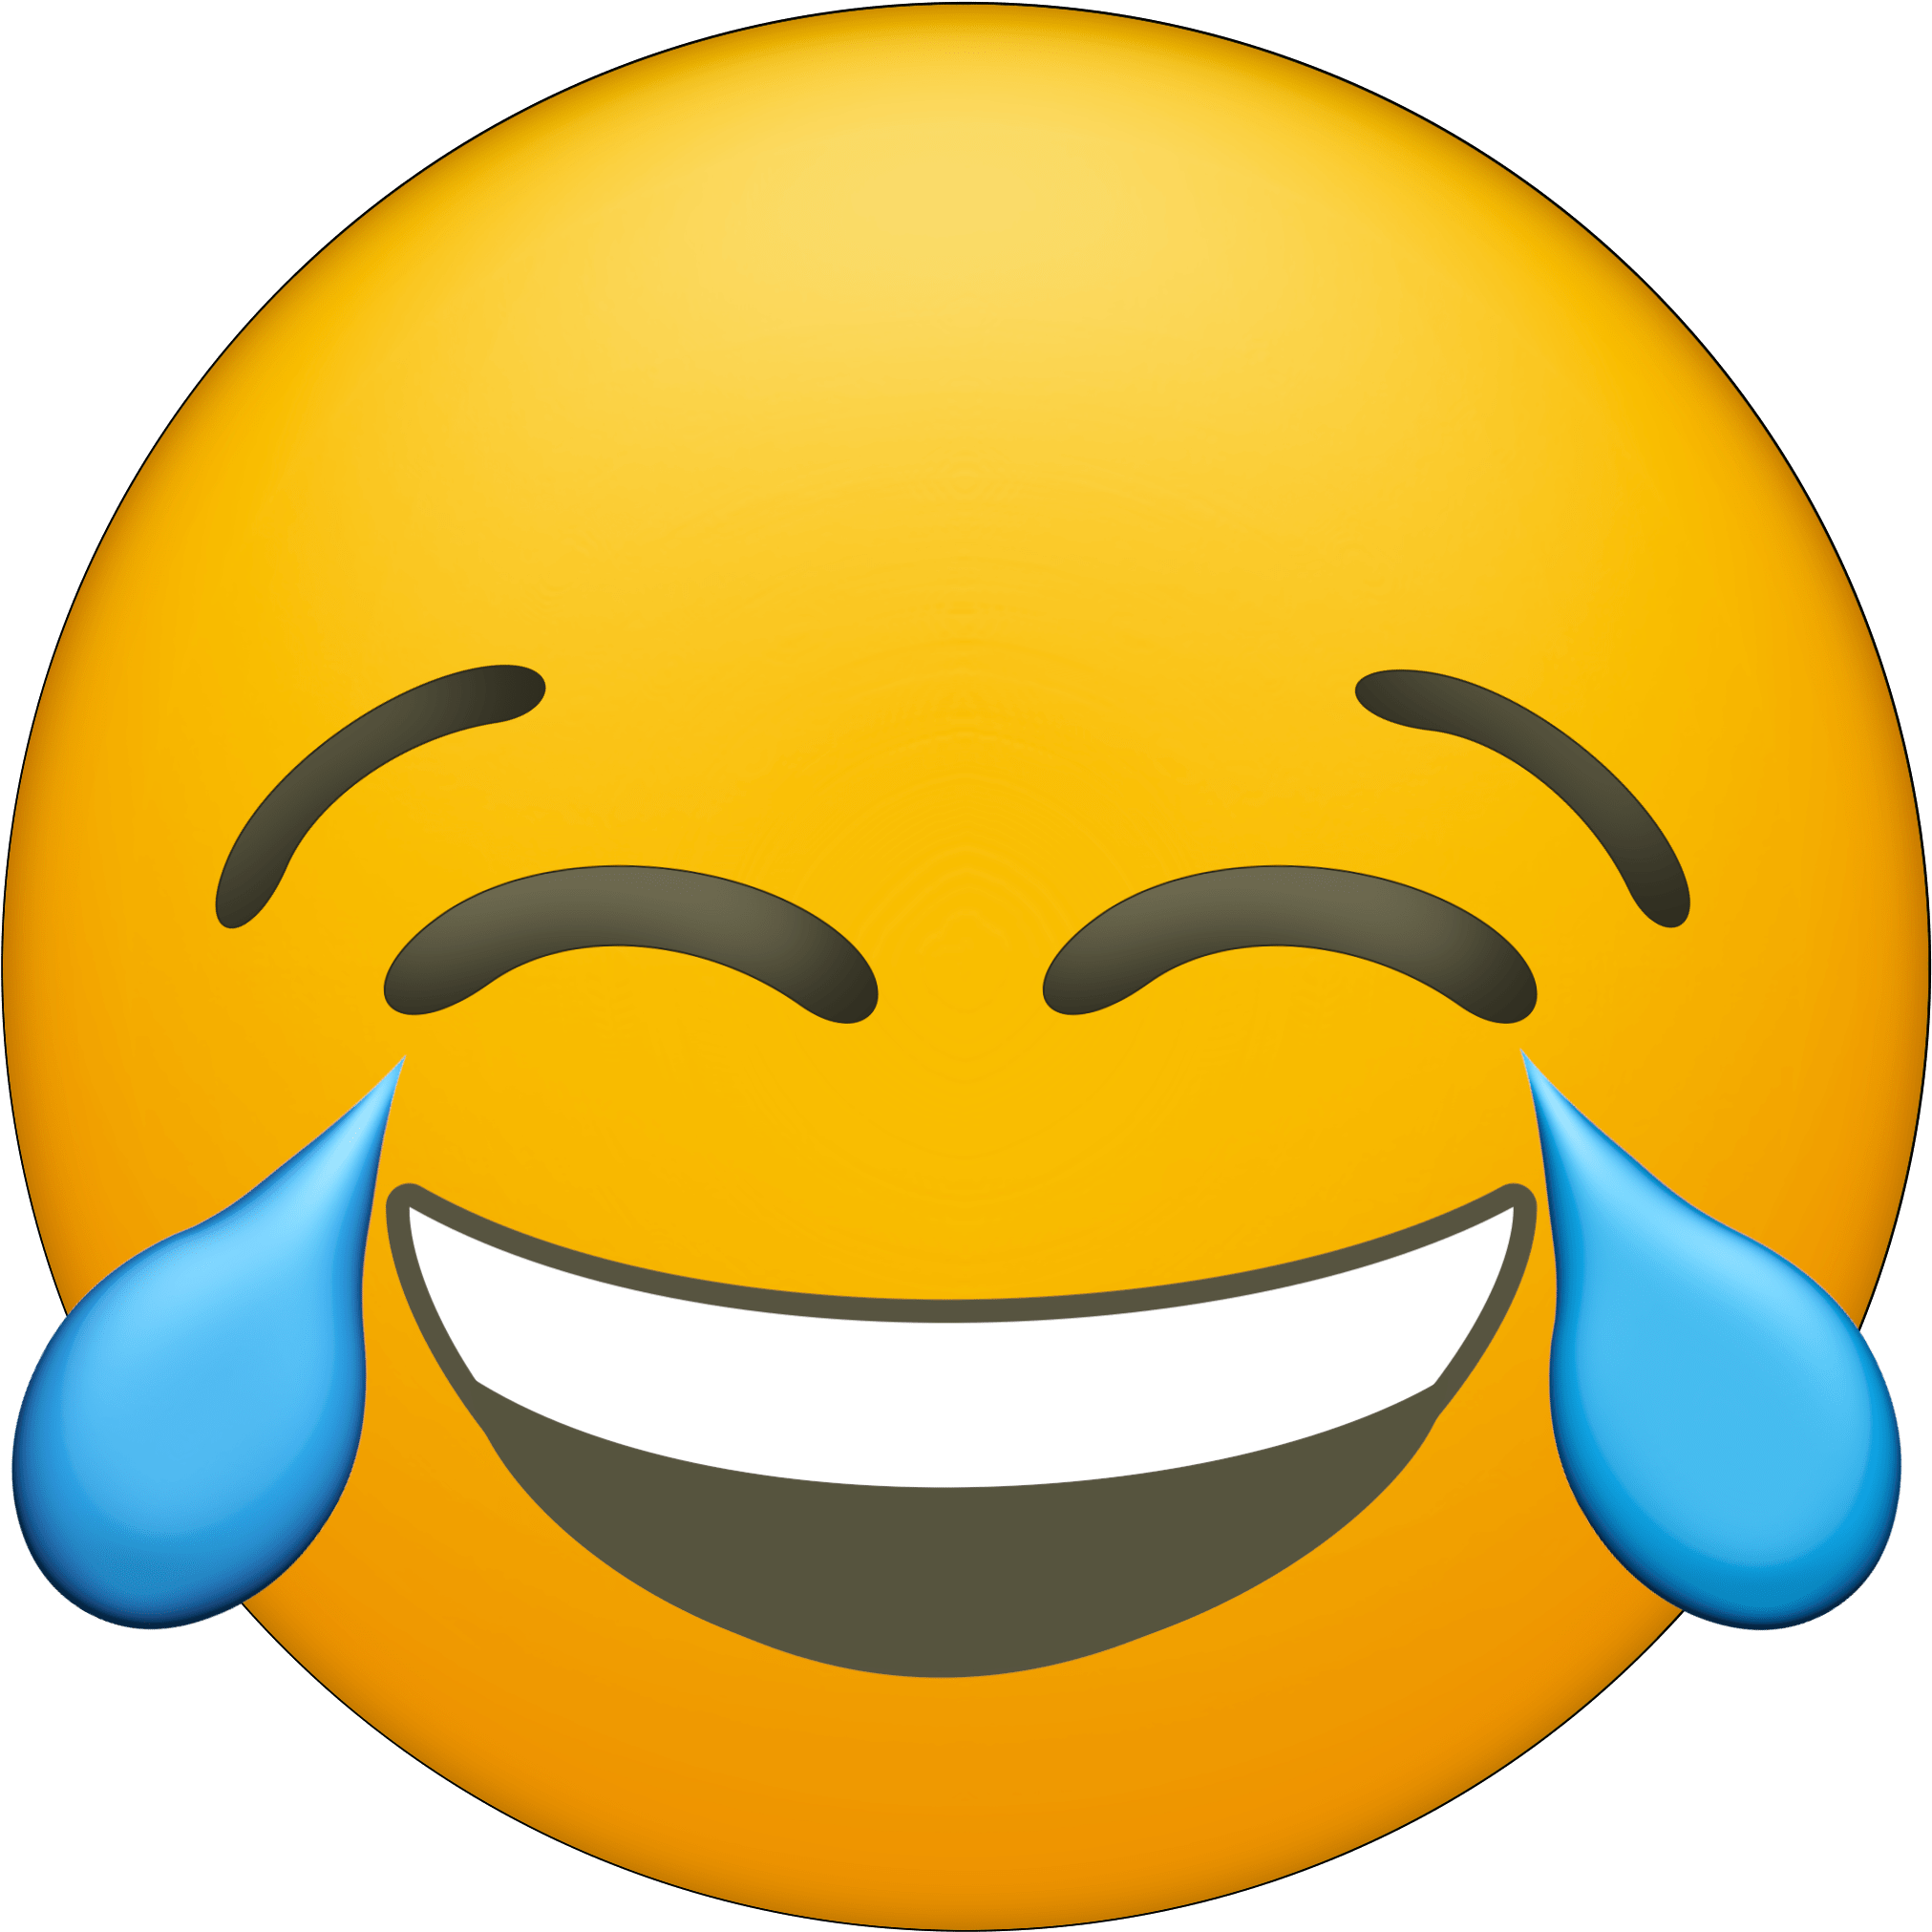 Laughter Emoji Download Free Image PNG Image